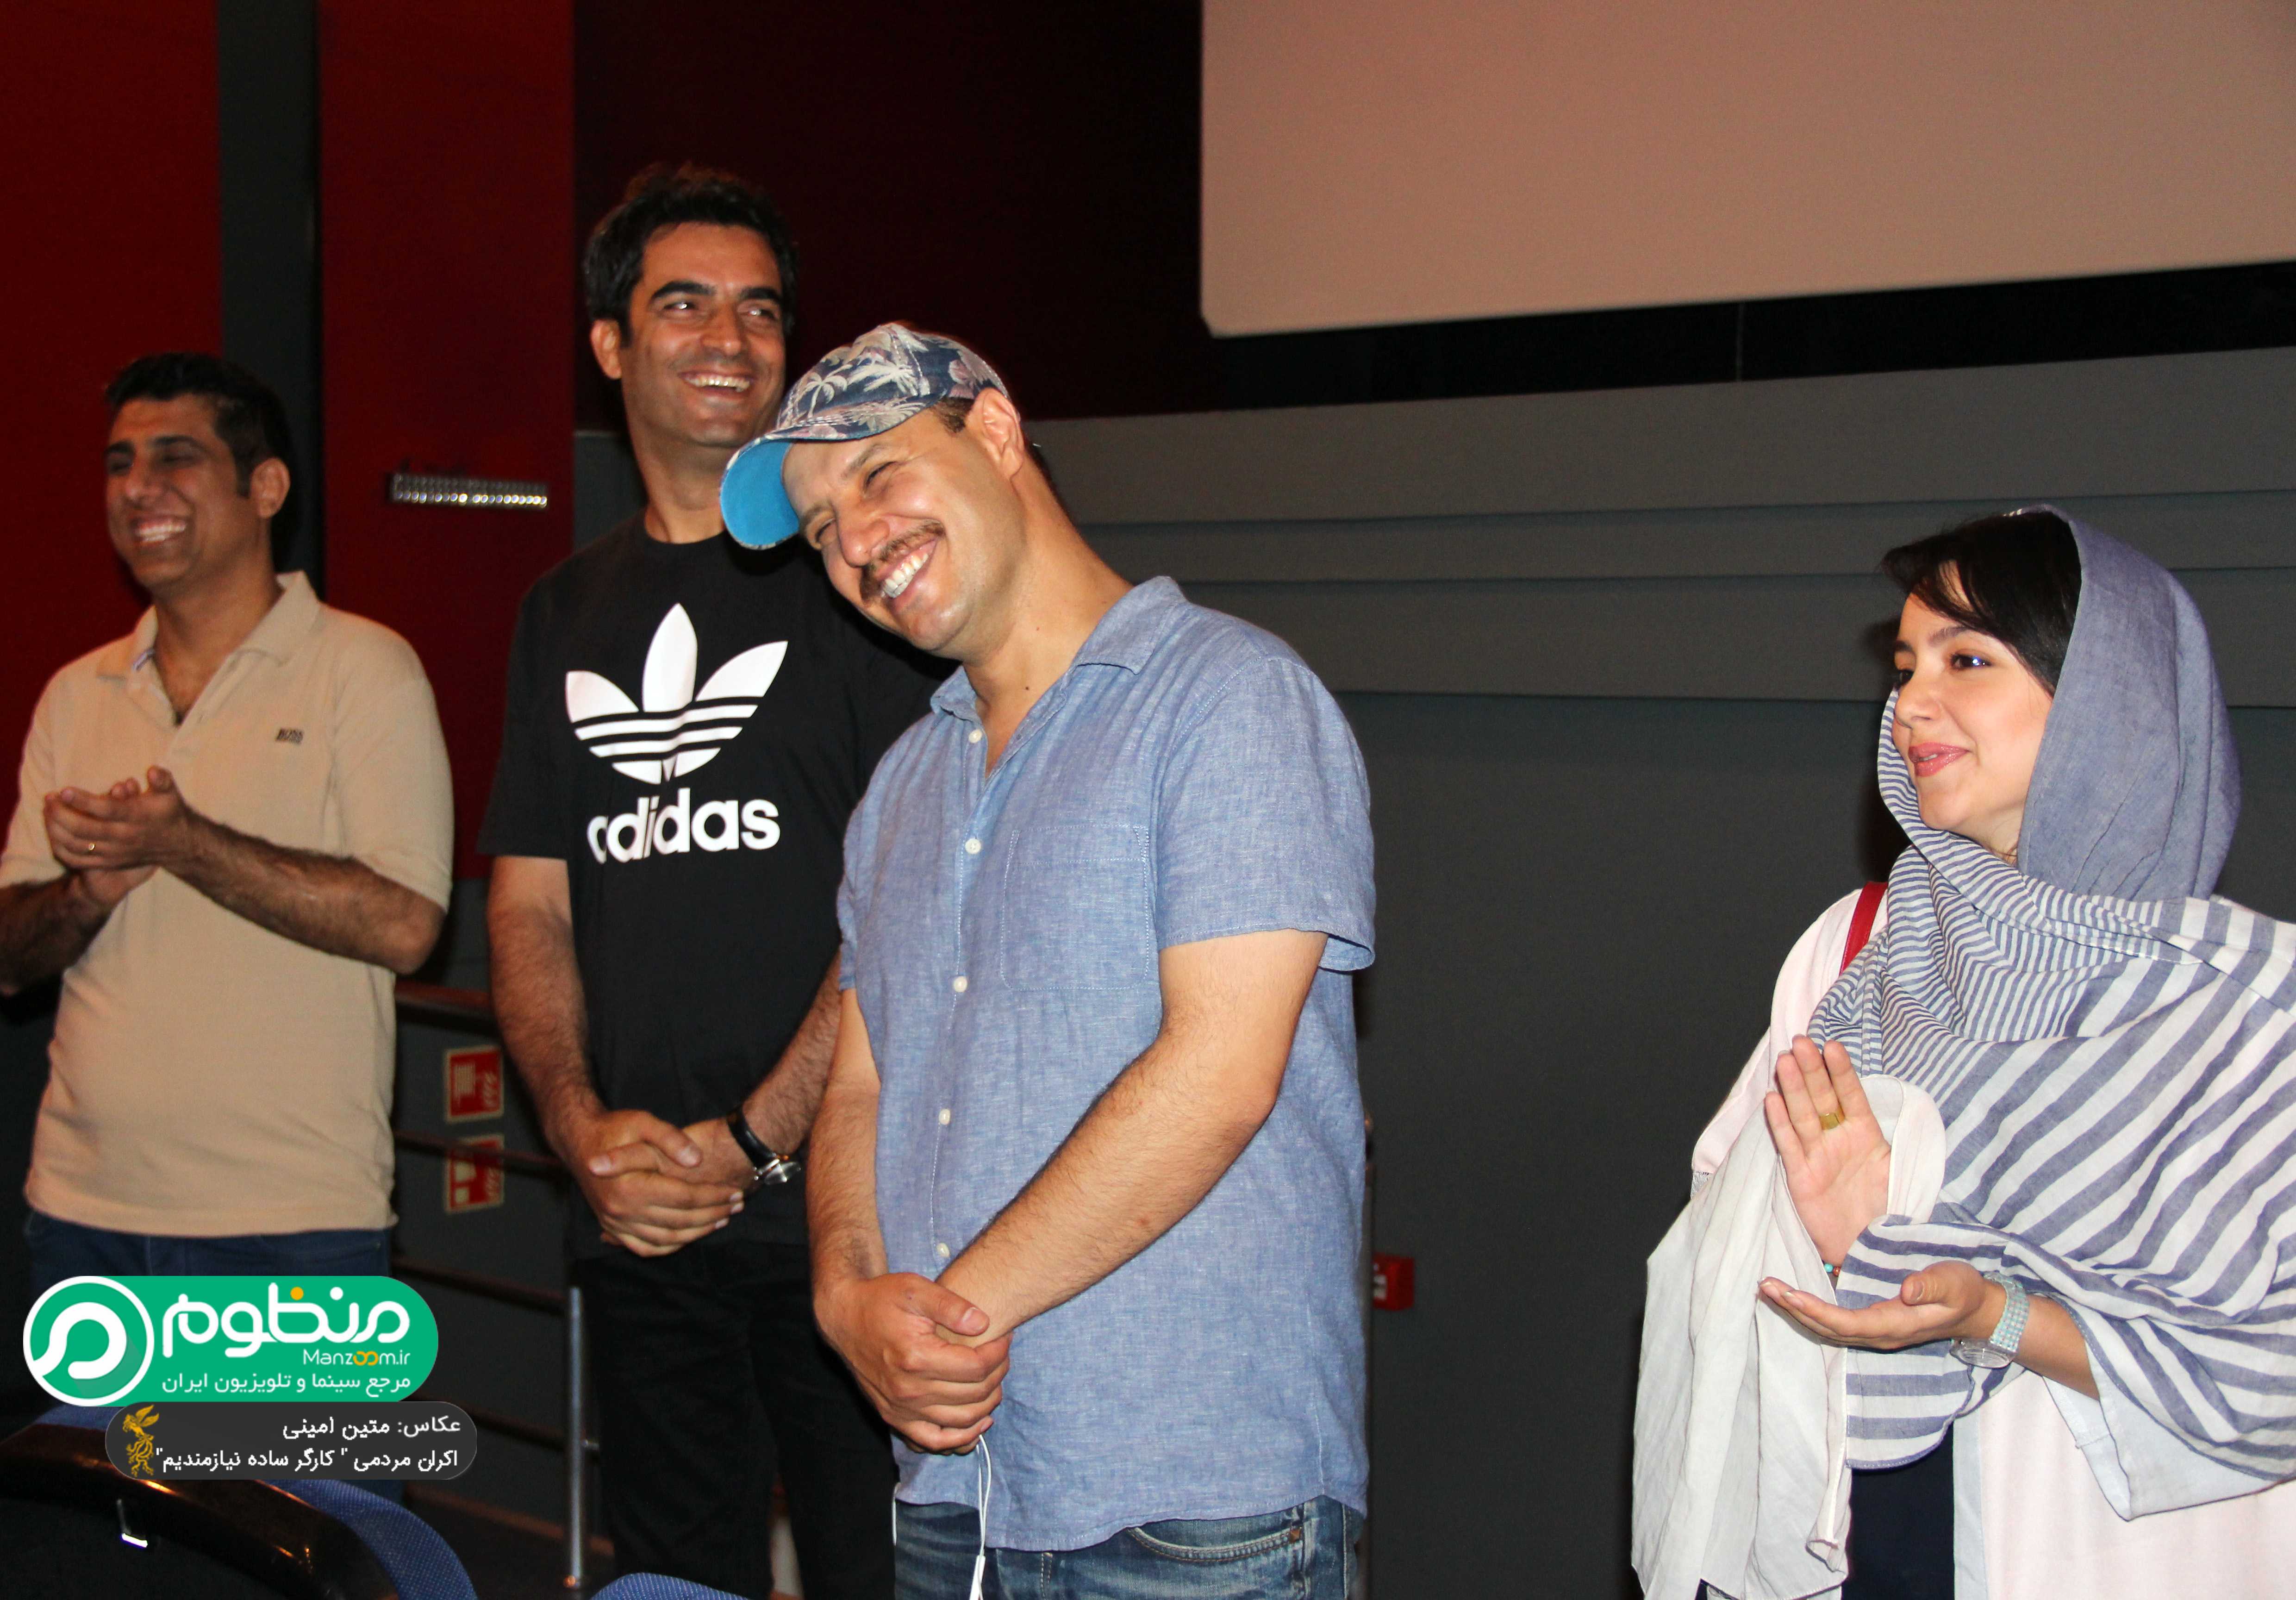 جواد عزتی در اکران افتتاحیه فیلم سینمایی کارگر ساده نیازمندیم به همراه نازنین بیاتی و منوچهر هادی